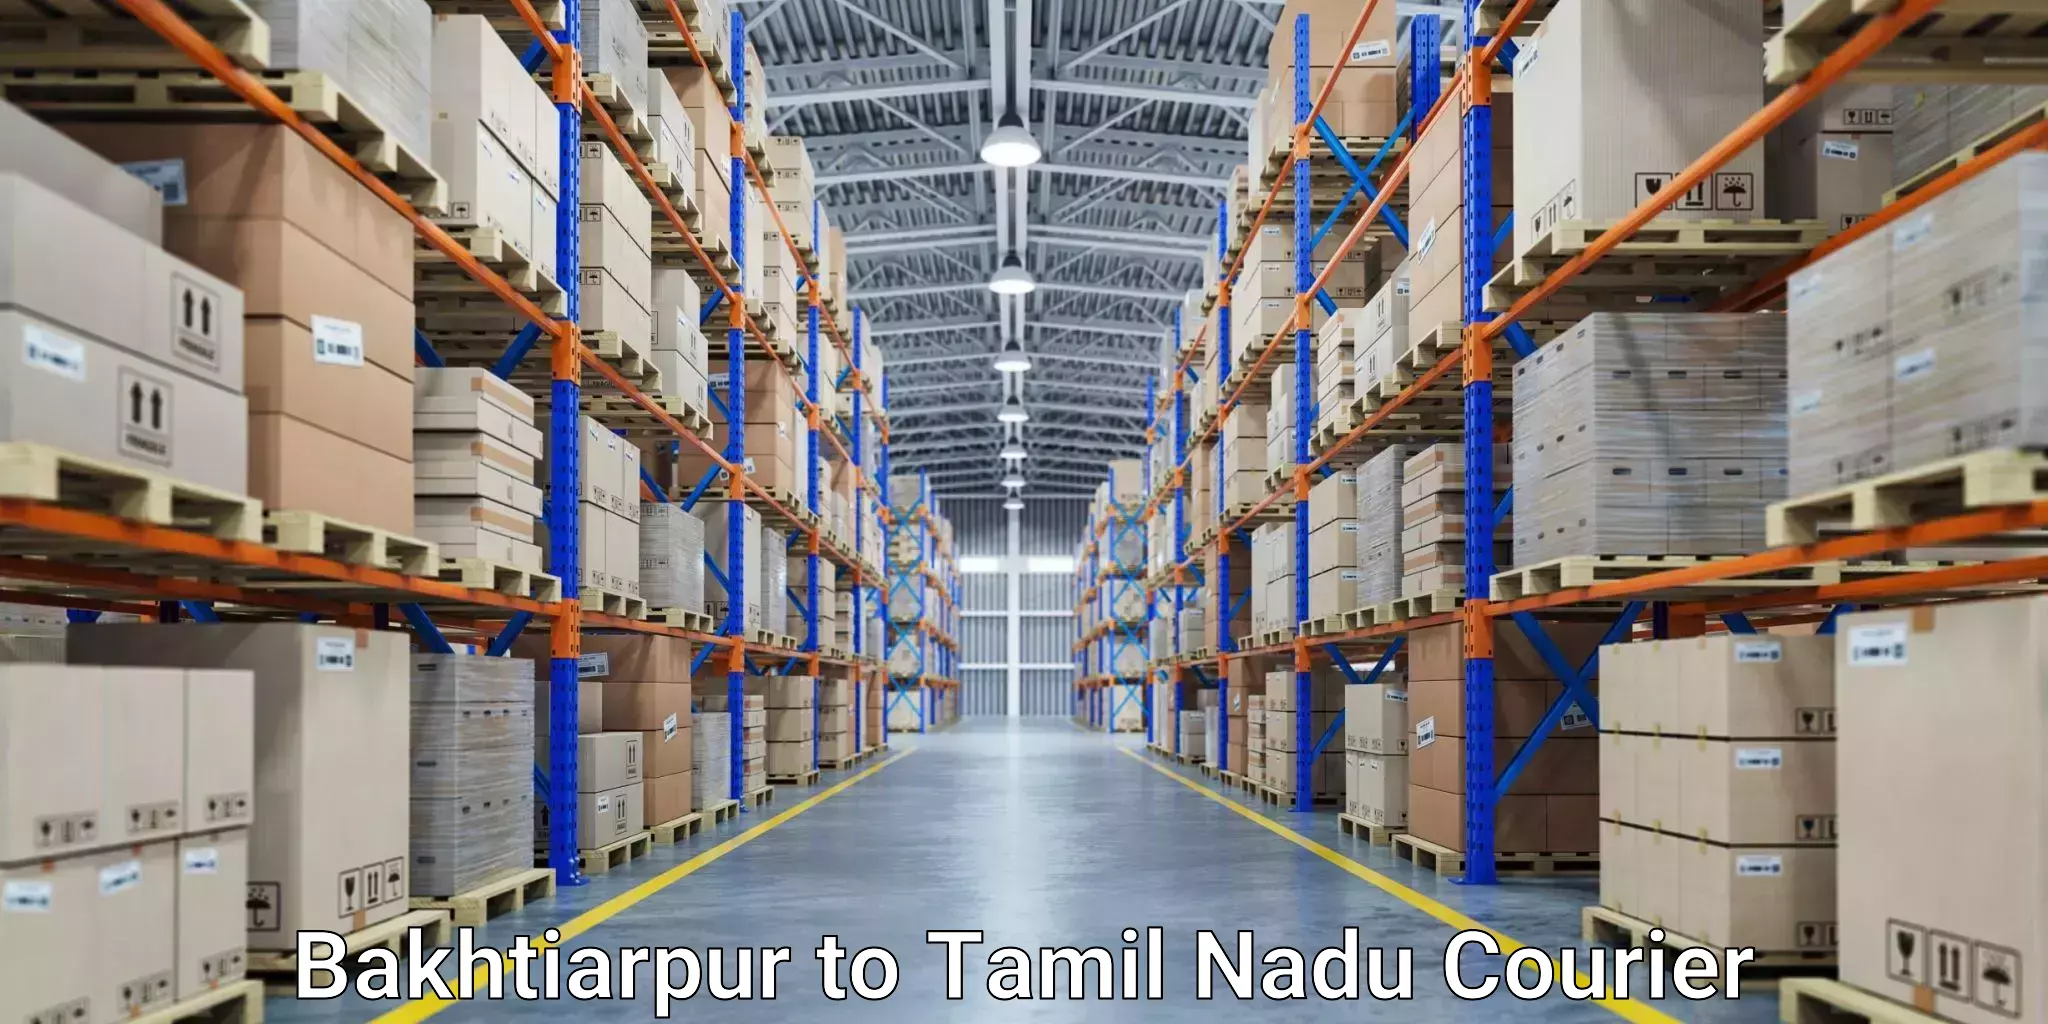 Custom courier packages Bakhtiarpur to Kanchipuram